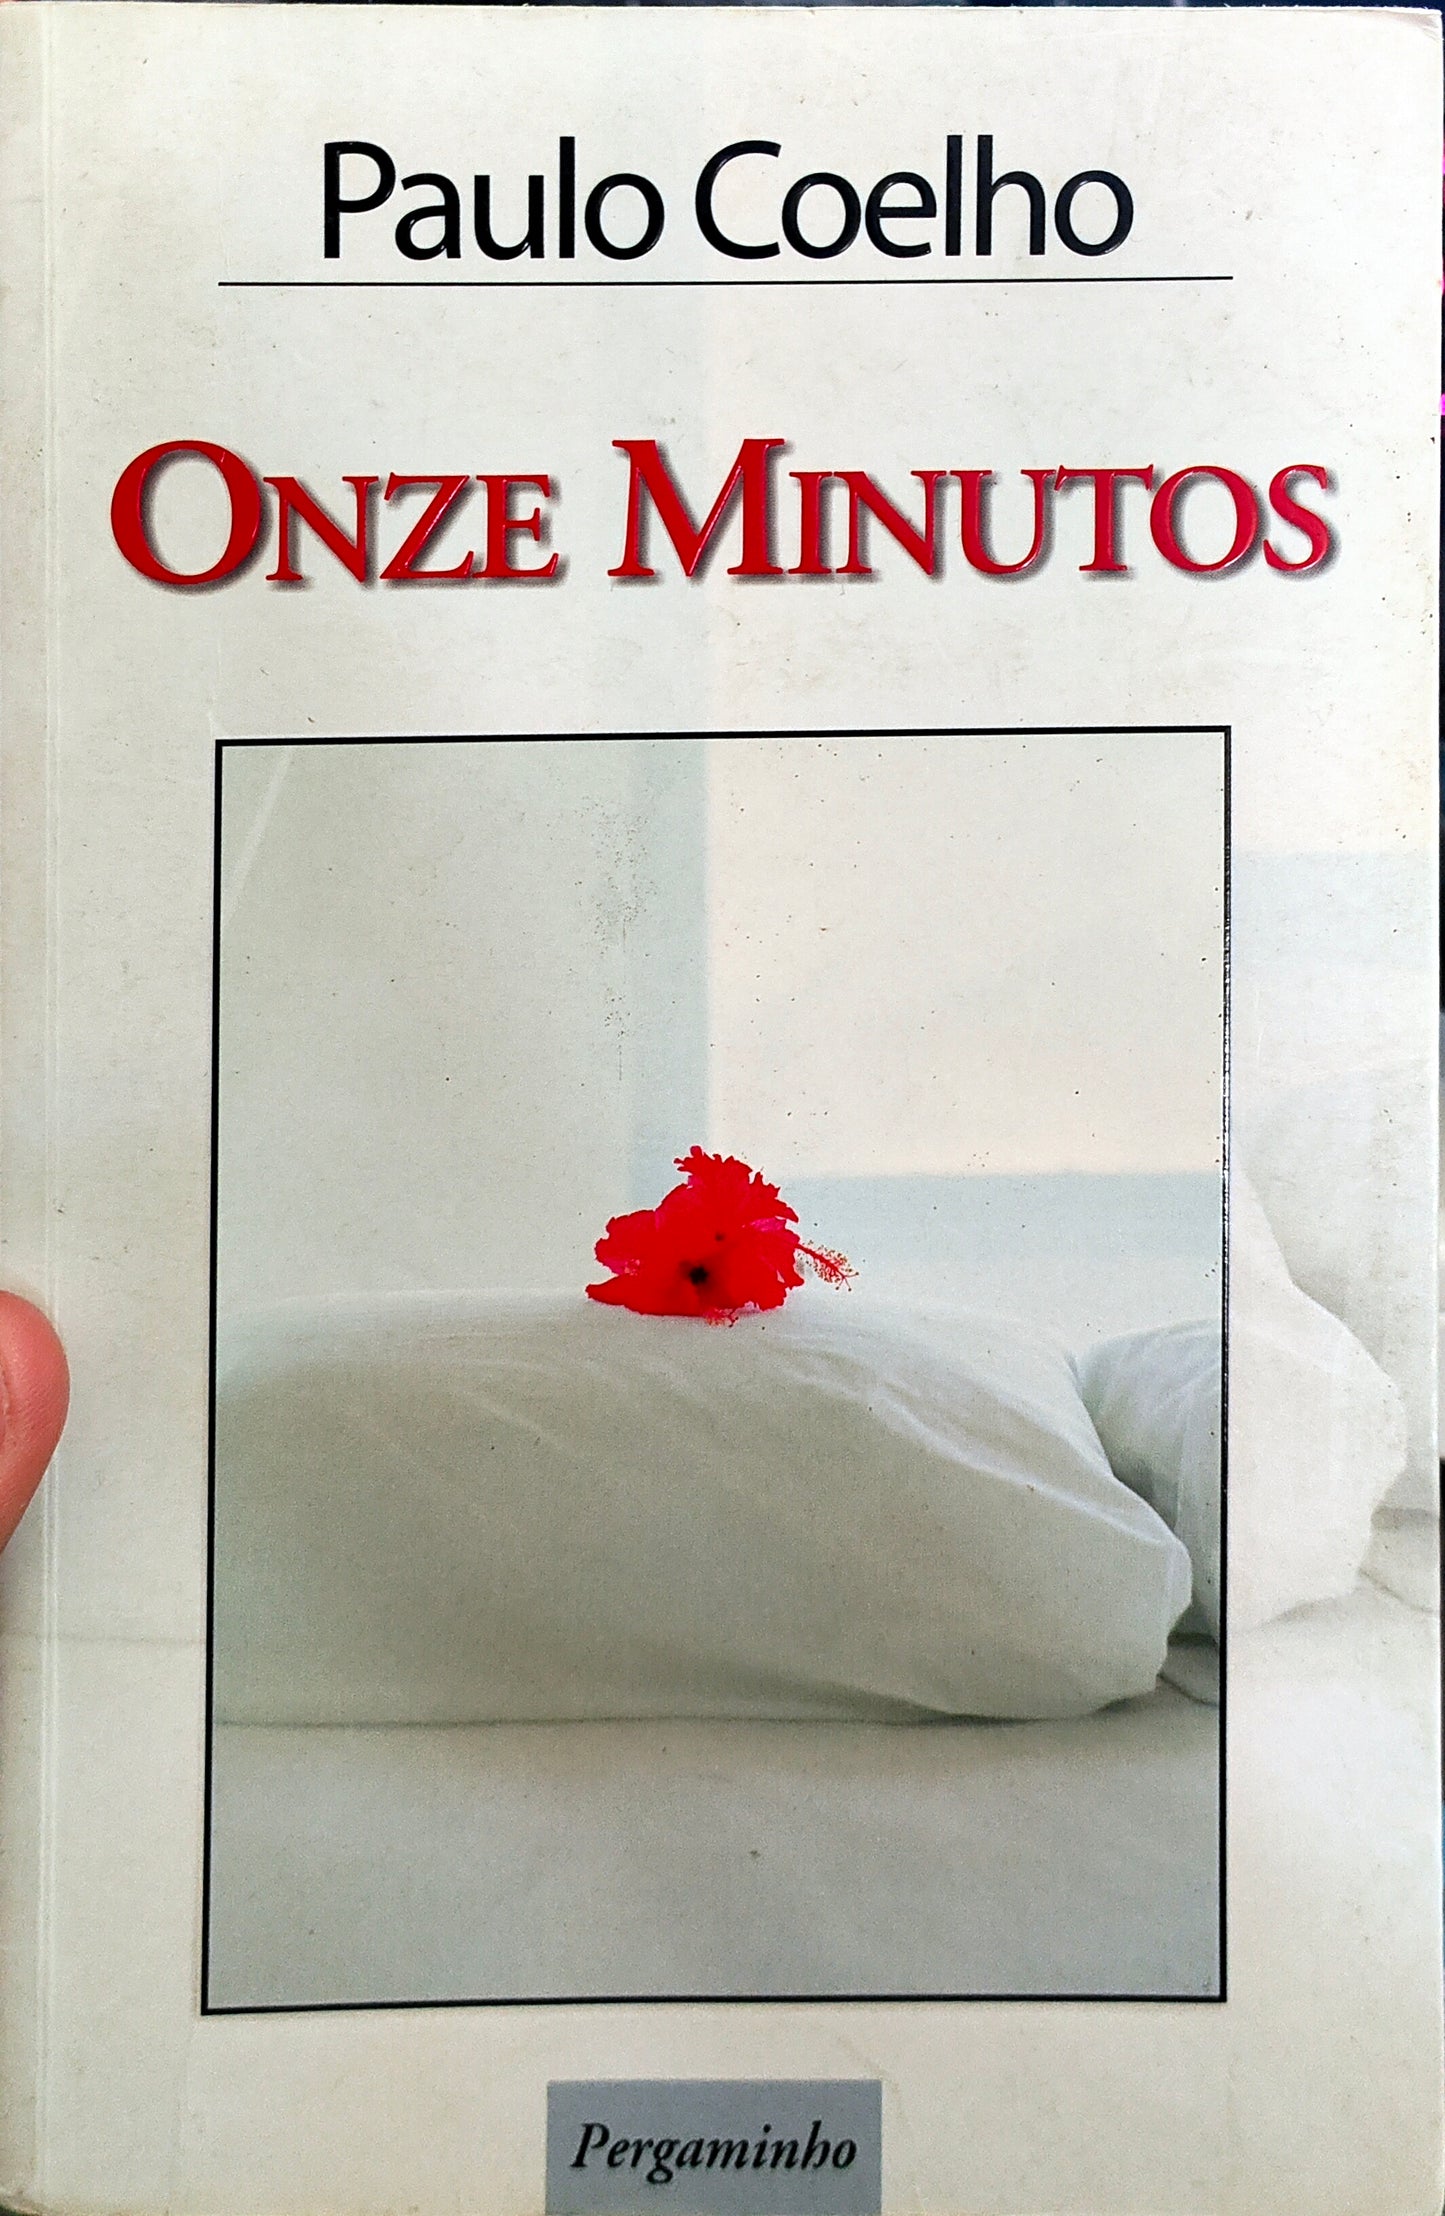 LIVRO - Onze Minutos de Paulo Coelho - USADO